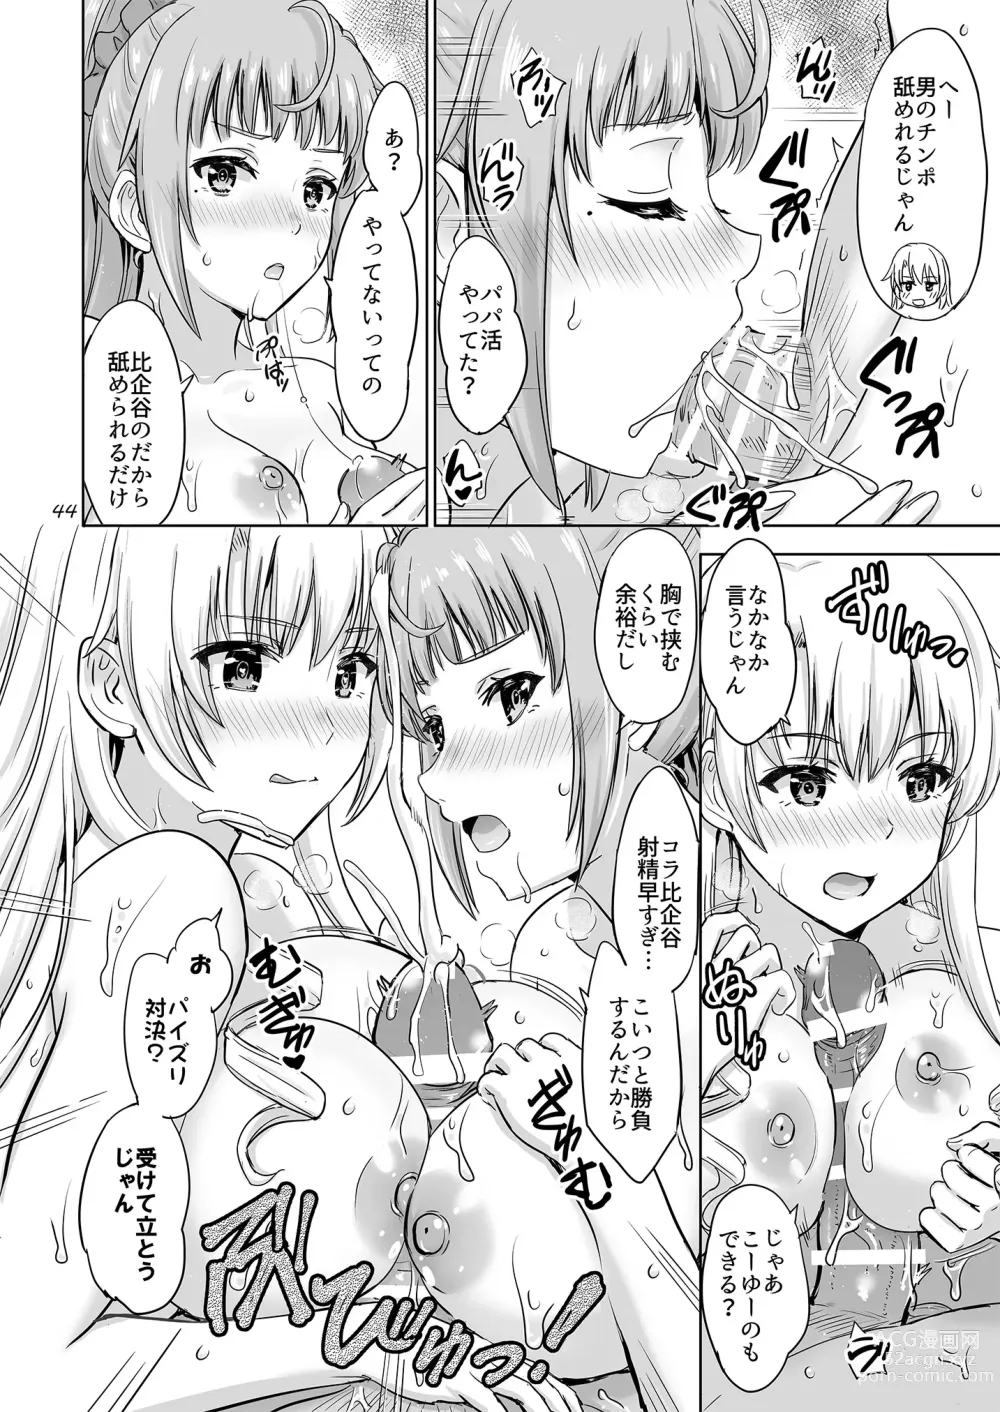 Page 43 of doujinshi Dokyusei-tachi to no Sukoshi Ibitsu na Nikutai Kankei. - Yumiko miura & Saki kawasaki each have sex with Hachiman.